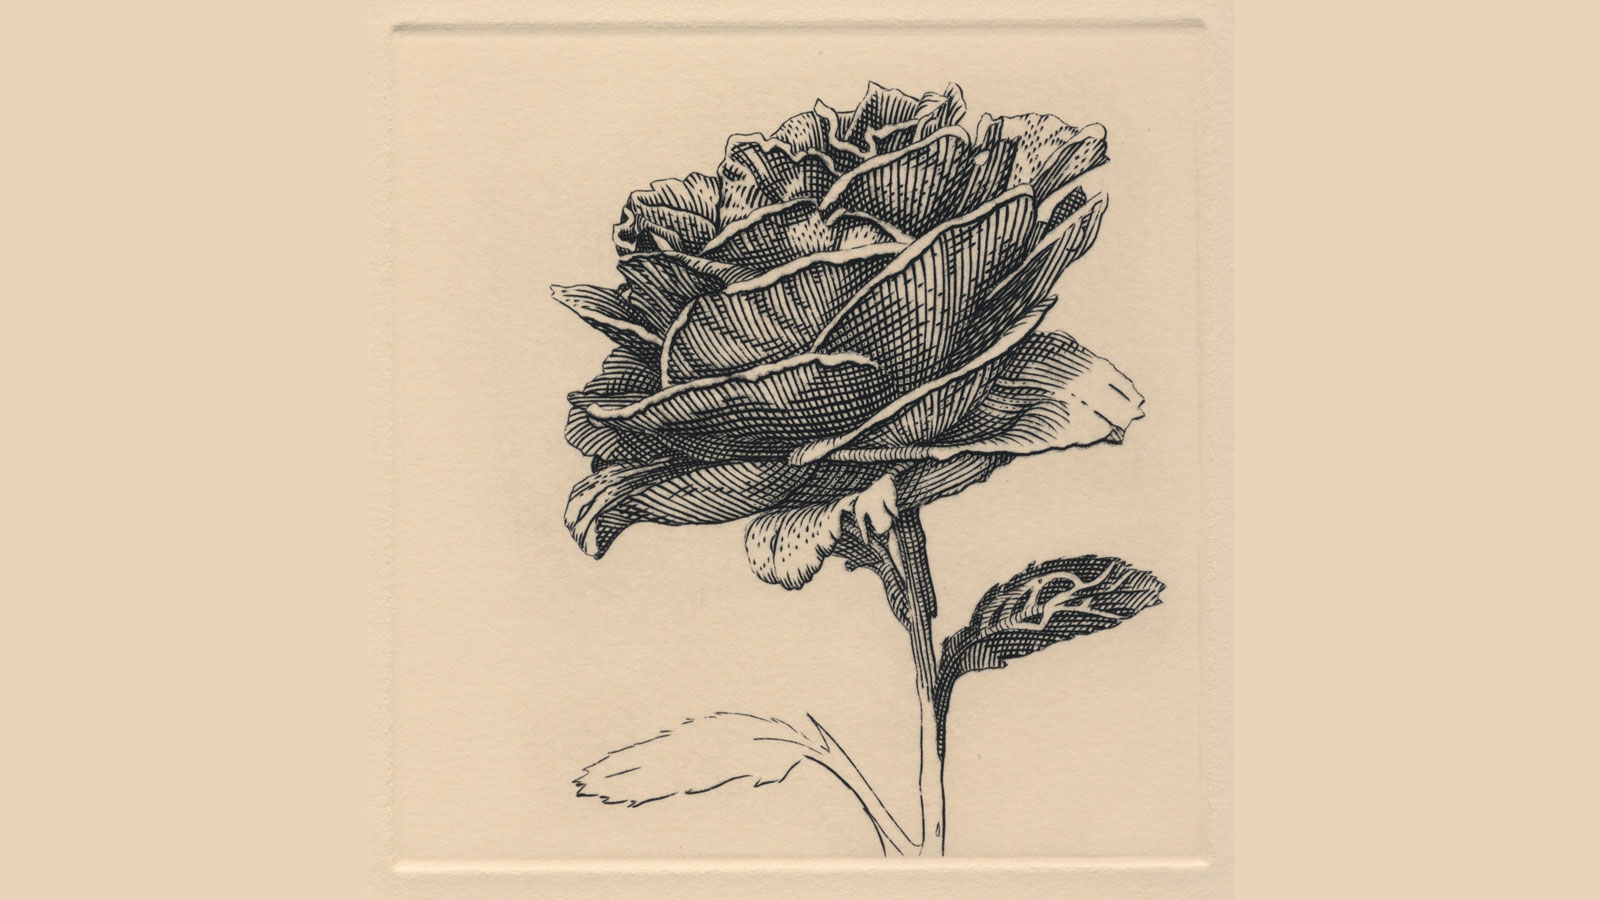 Metal-Engraving Rose in Bloom by Ryan-Horvath